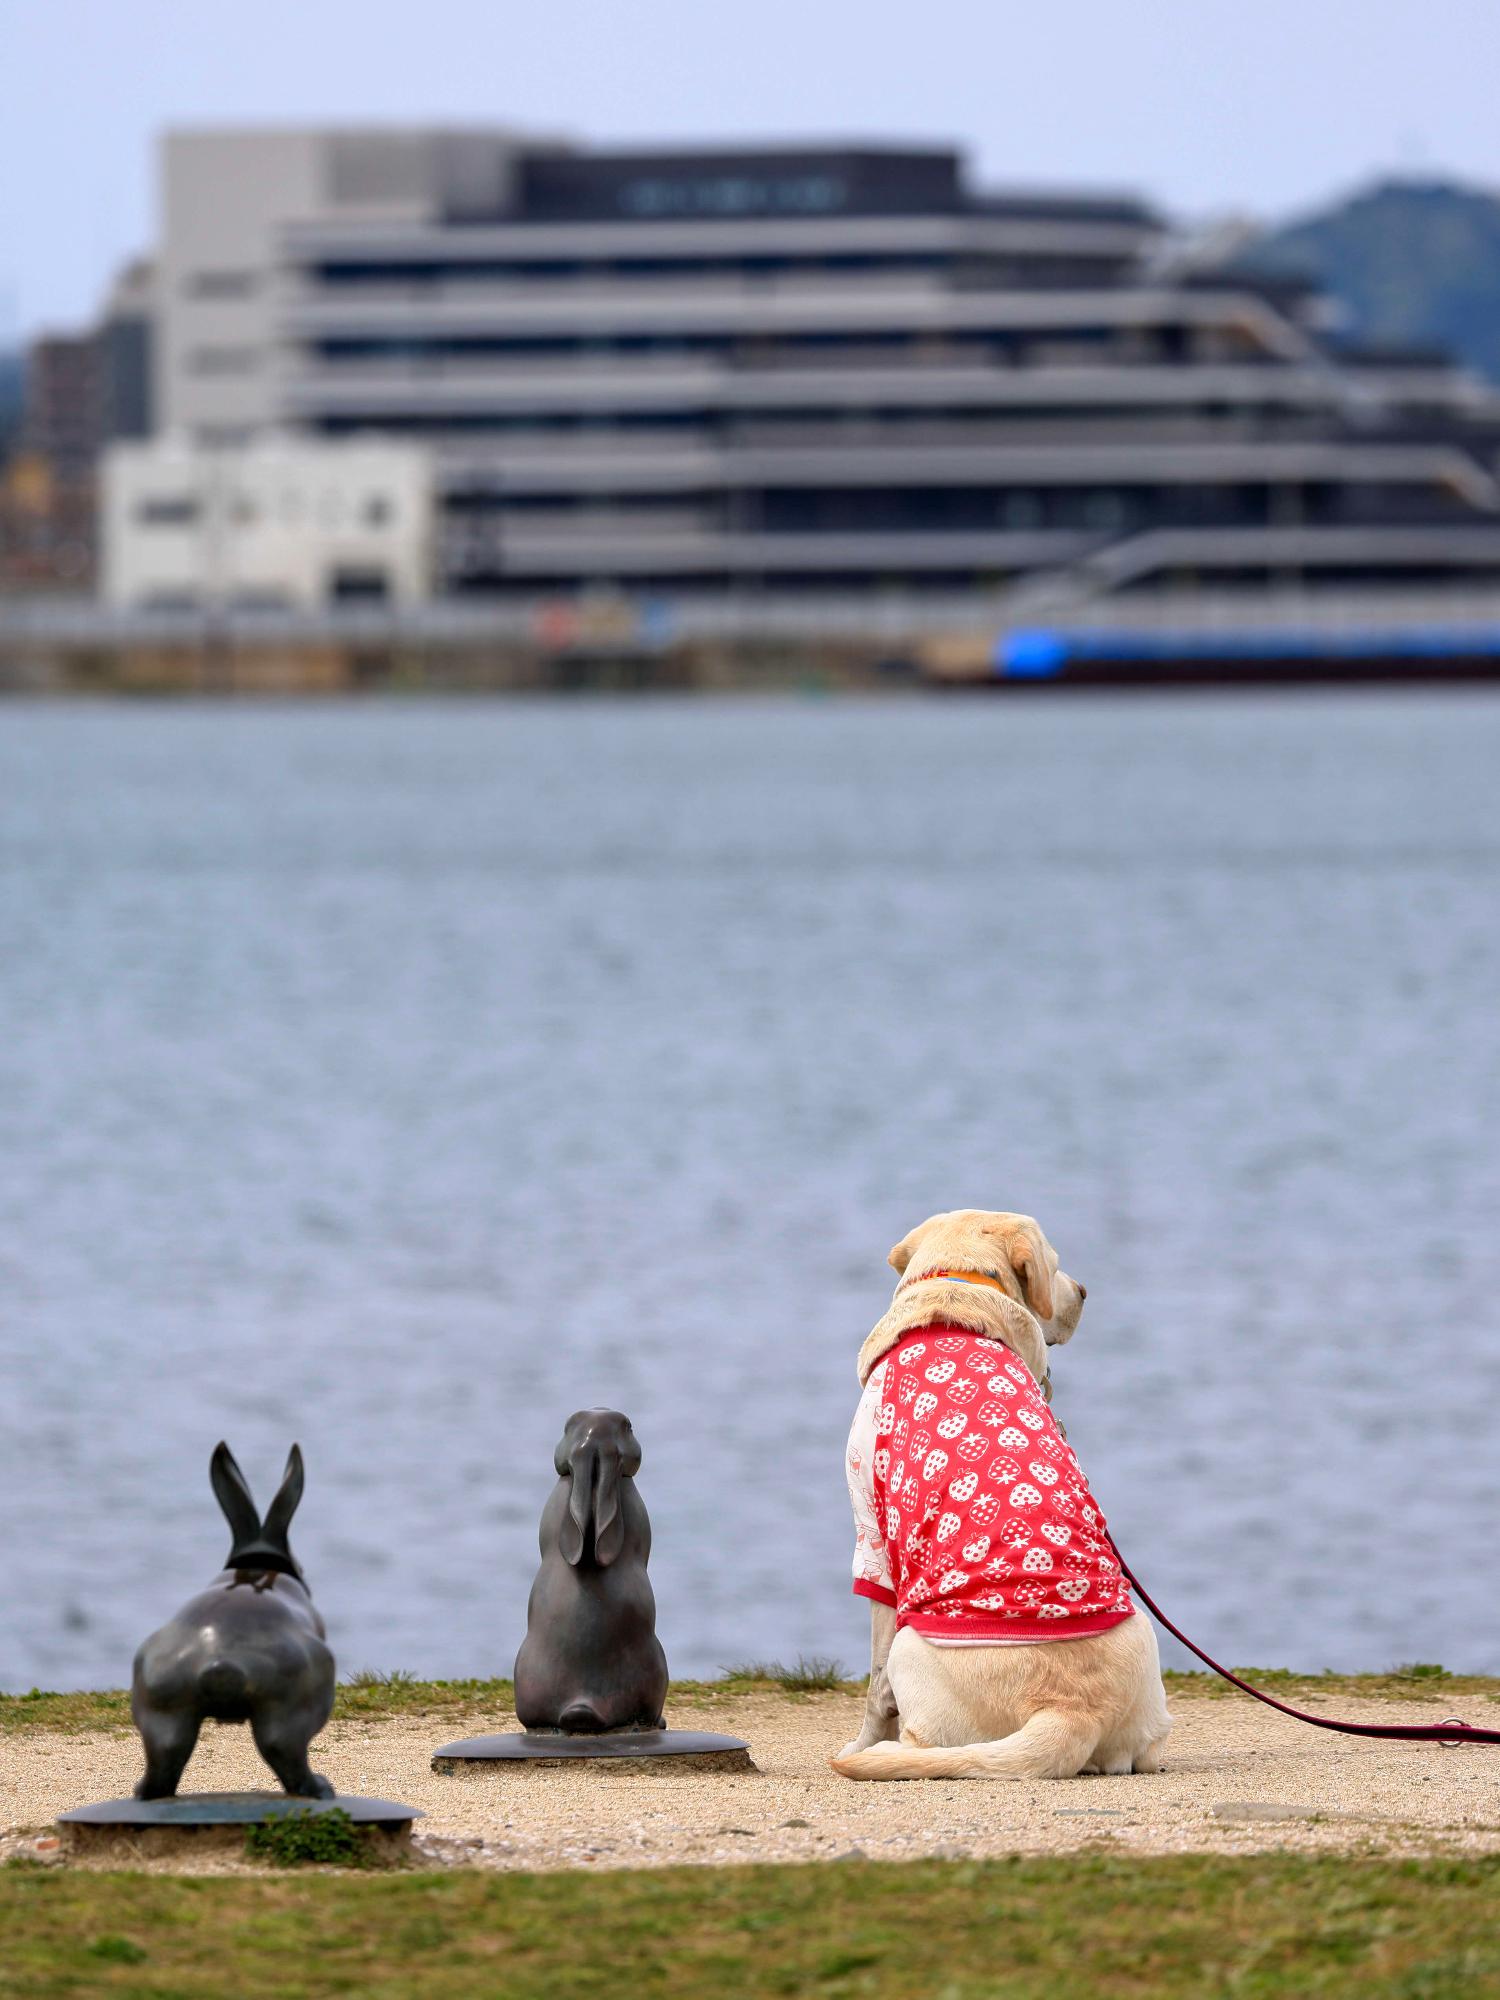 後姿のうさぎの銅像及び犬が松江市役所を見ている写真